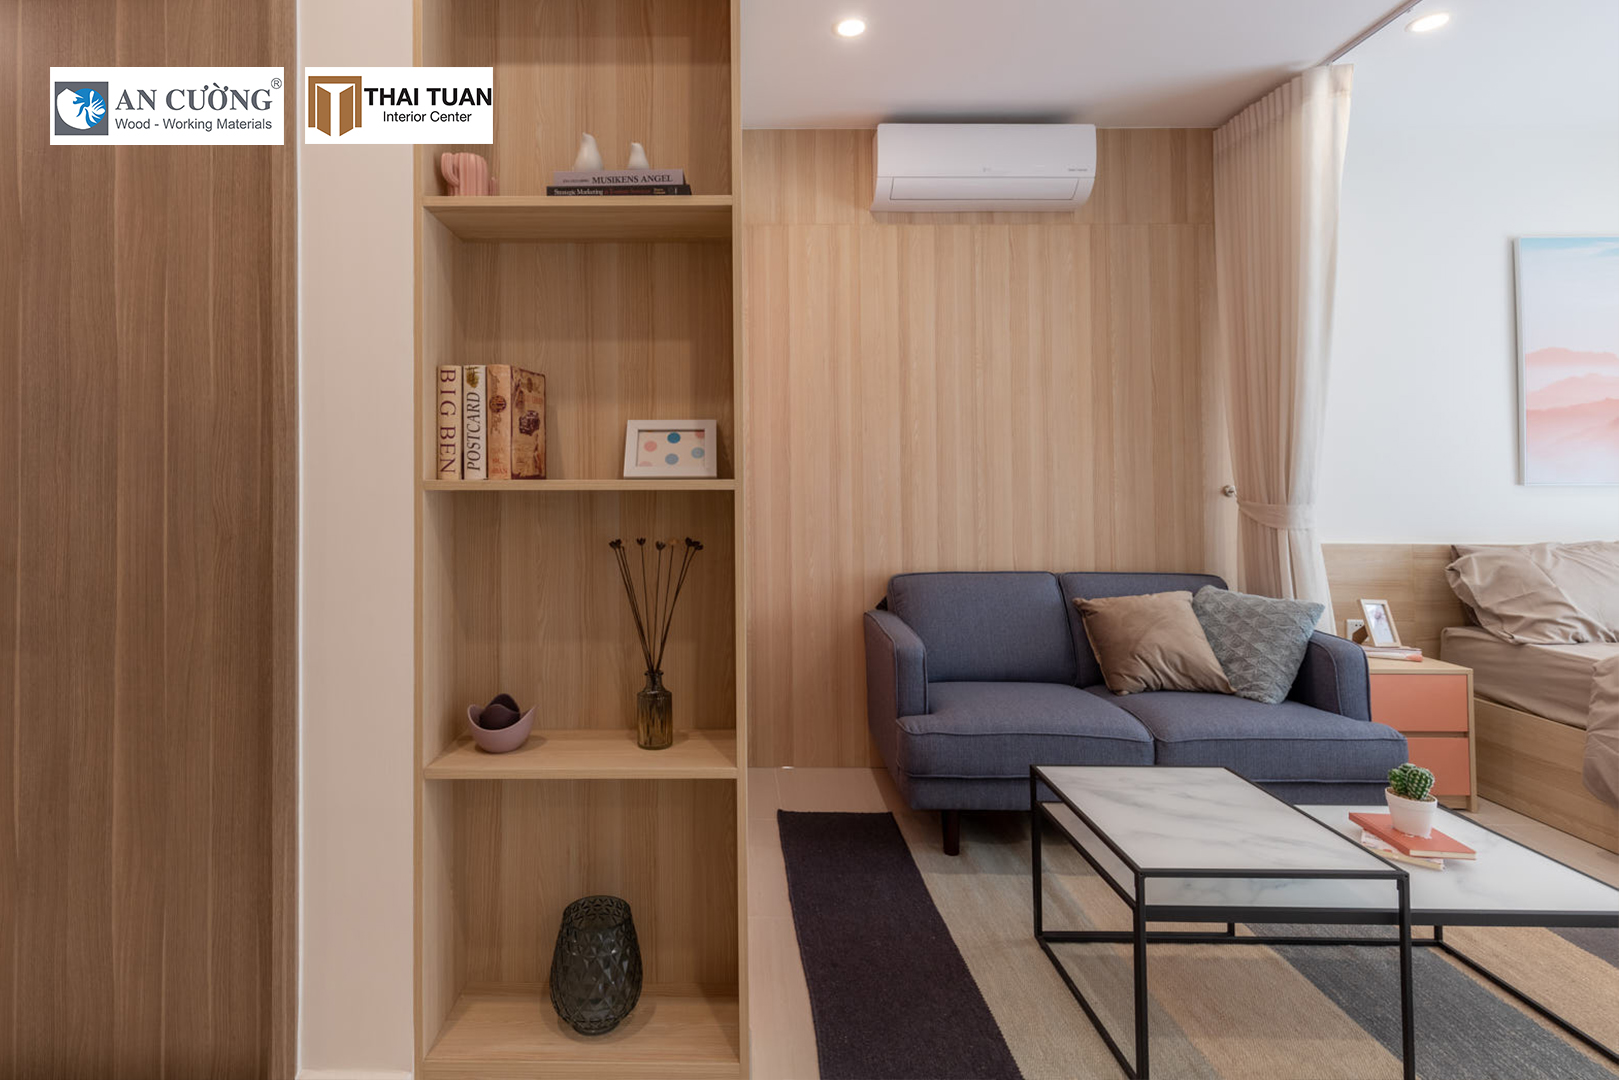 Không gian căn hộ được ứng dụng gỗ công nghiệp An Cường ấm cúng